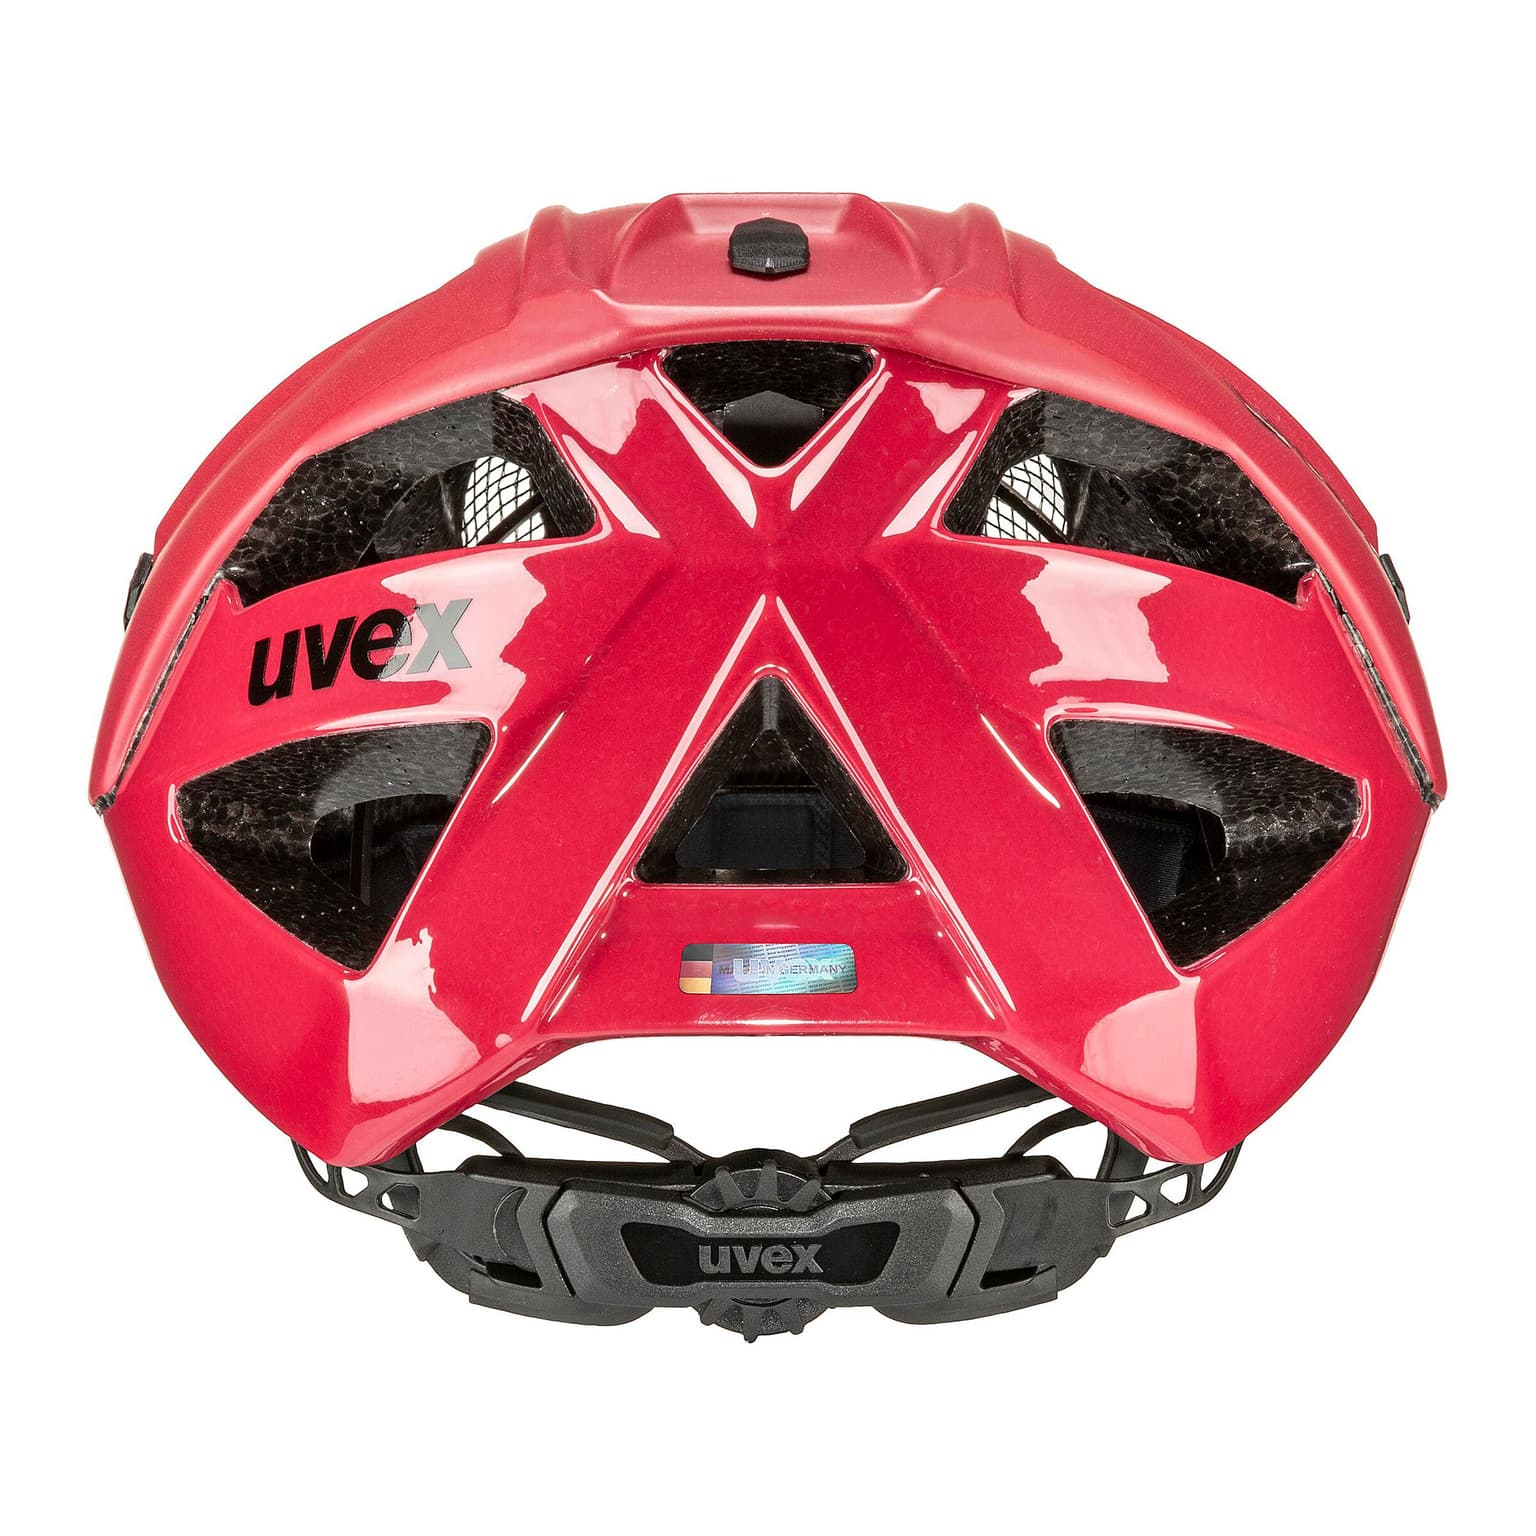 Uvex Uvex Quatro cc Velohelm rouge 5